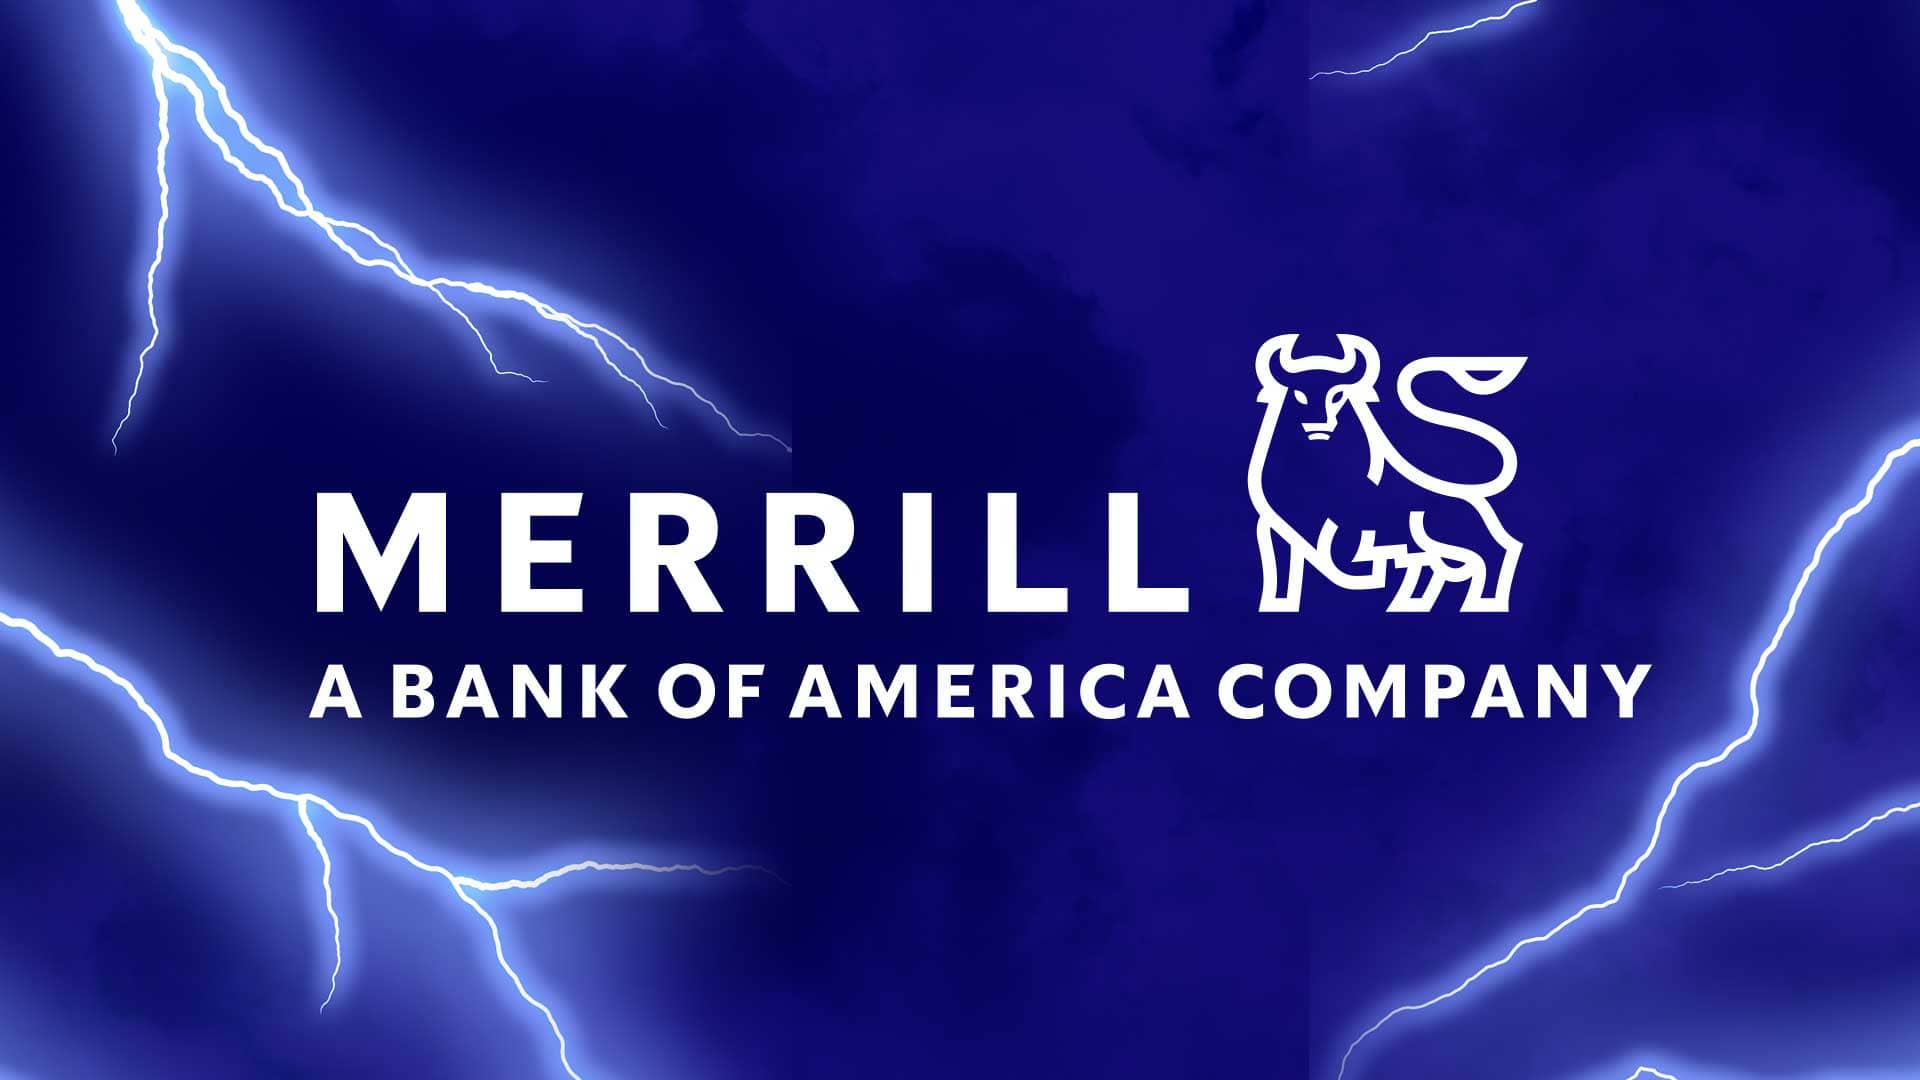 Merrill (Bank of America): Stadium Graphics.